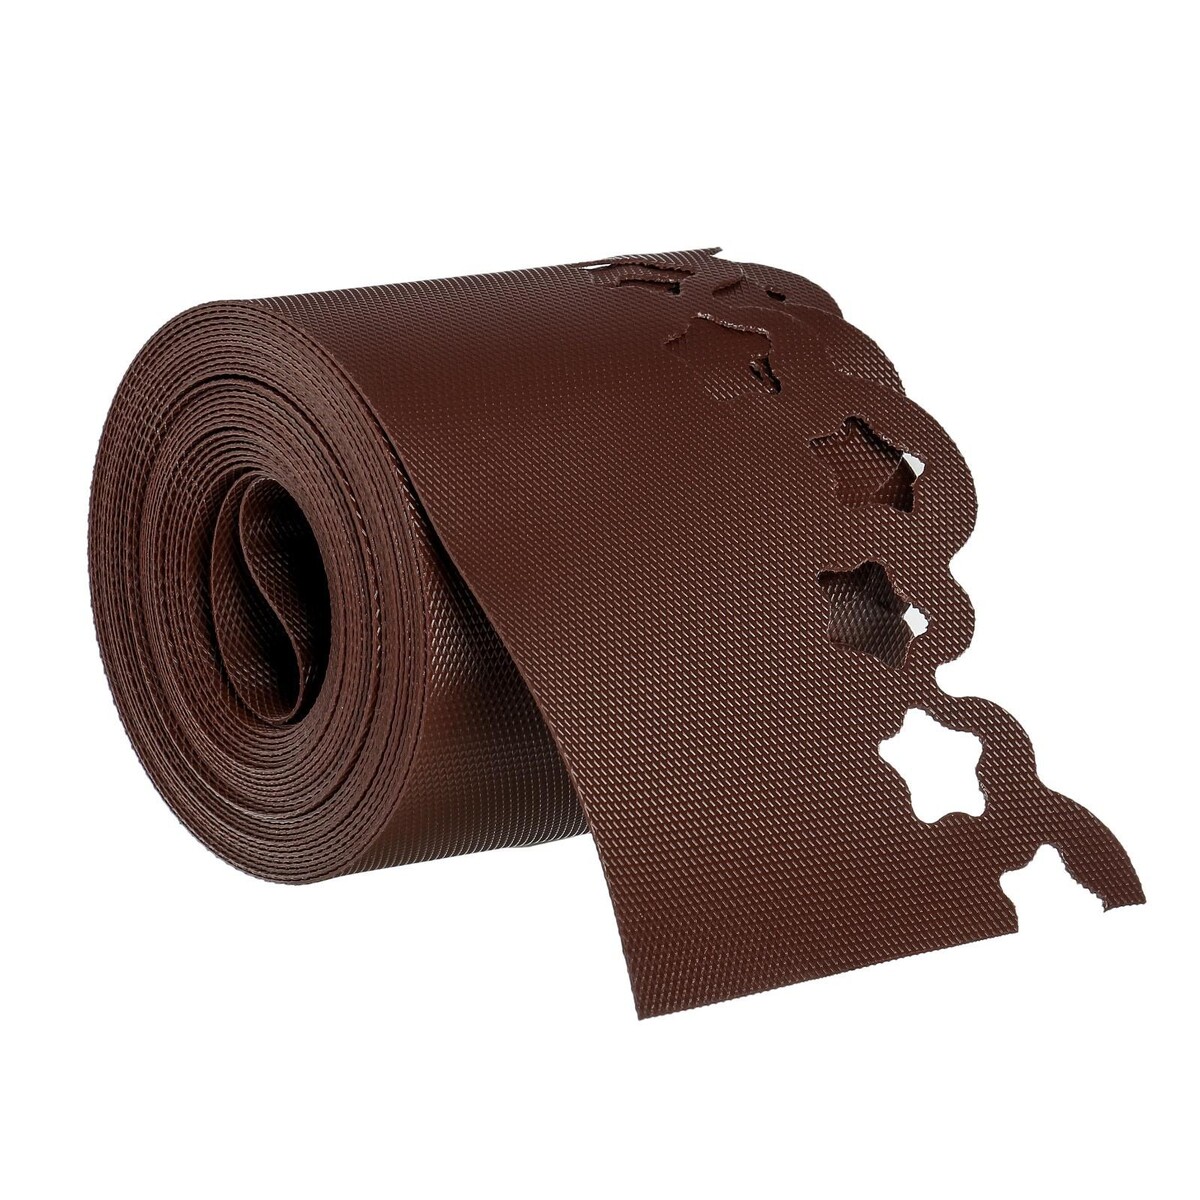 Лента бордюрная, 0.15 × 9 м, толщина 1.2 мм, пластиковая, фигурная, коричневая, greengo лента бордюрная 0 2 × 9 м толщина 1 2 мм пластиковая фигурная коричневая